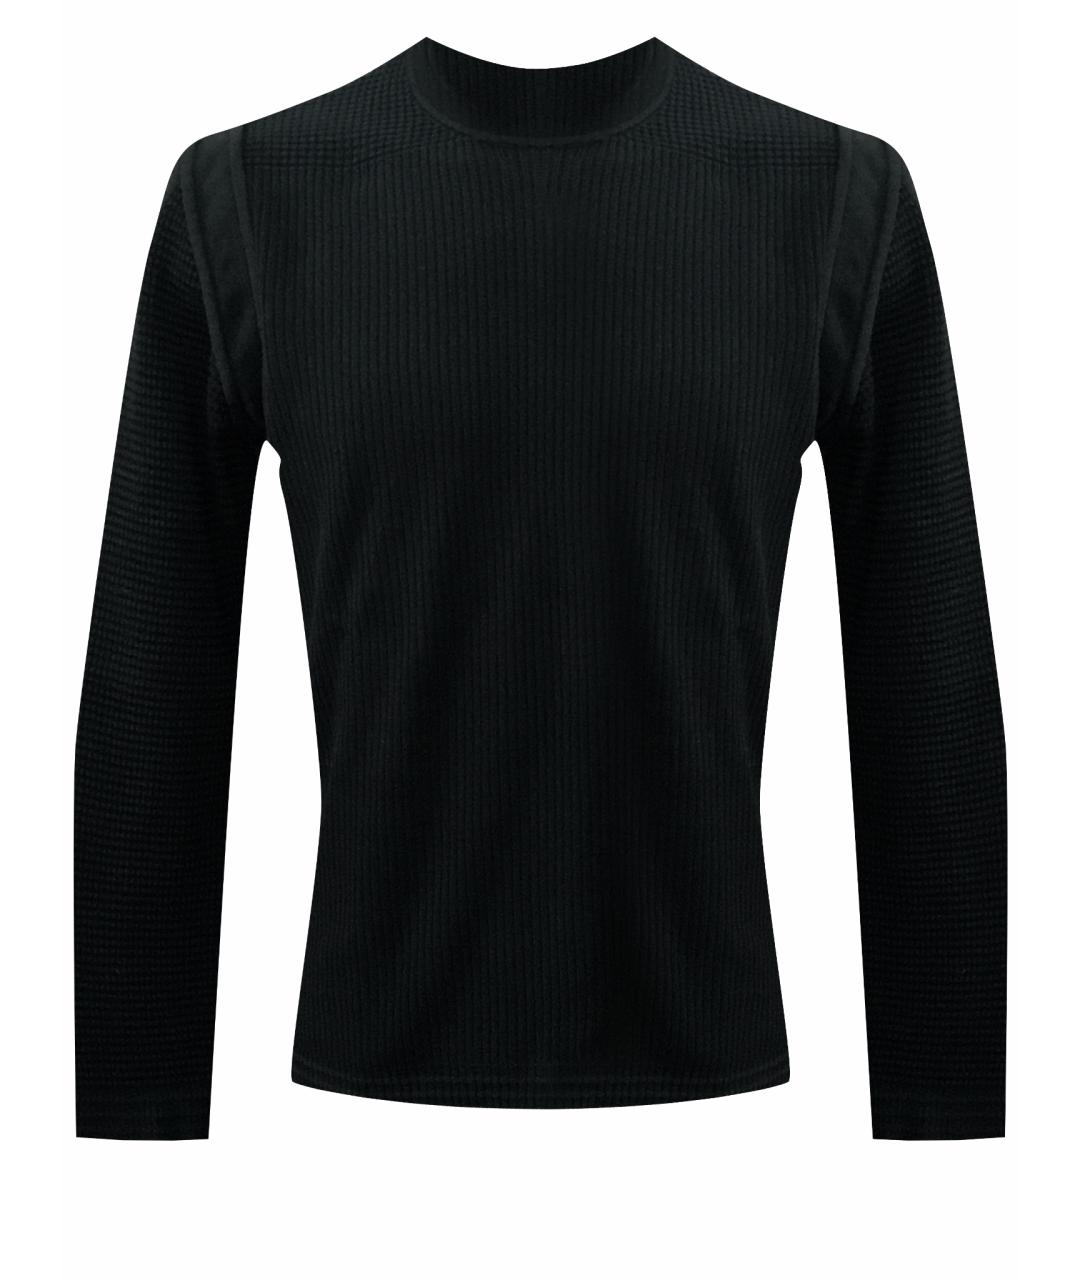 BILANCIONI Черный хлопковый джемпер / свитер, фото 1